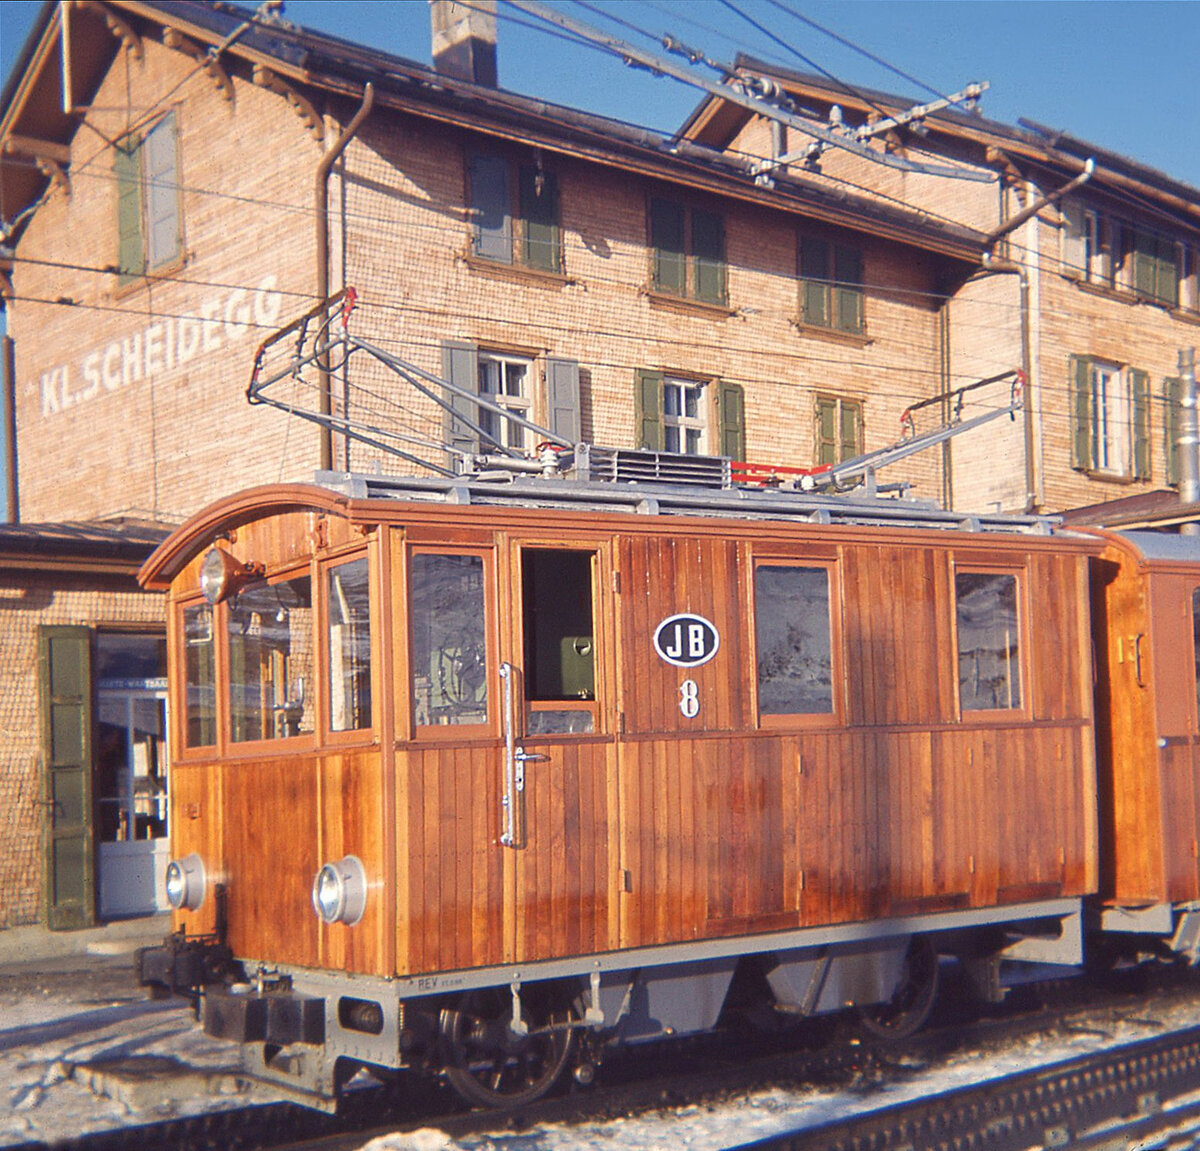 Lokomotive 8 der Jungfraubahn, Kleine Scheidegg, Januar 1964: Lok 8 wurde im Rahmen der Lieferung der Loks 8 - 10 als HGe2/2 für Zahnrad- und Adhäsionsbetrieb 1911/12 gebaut. 1950/51 wurden sie auf reinen Zahnradbetrieb umgebaut. Bis 1960 unter 650 Volt/40 Hz in Betrieb, ab November 1960 unter 1125 Volt/50 Hz. 